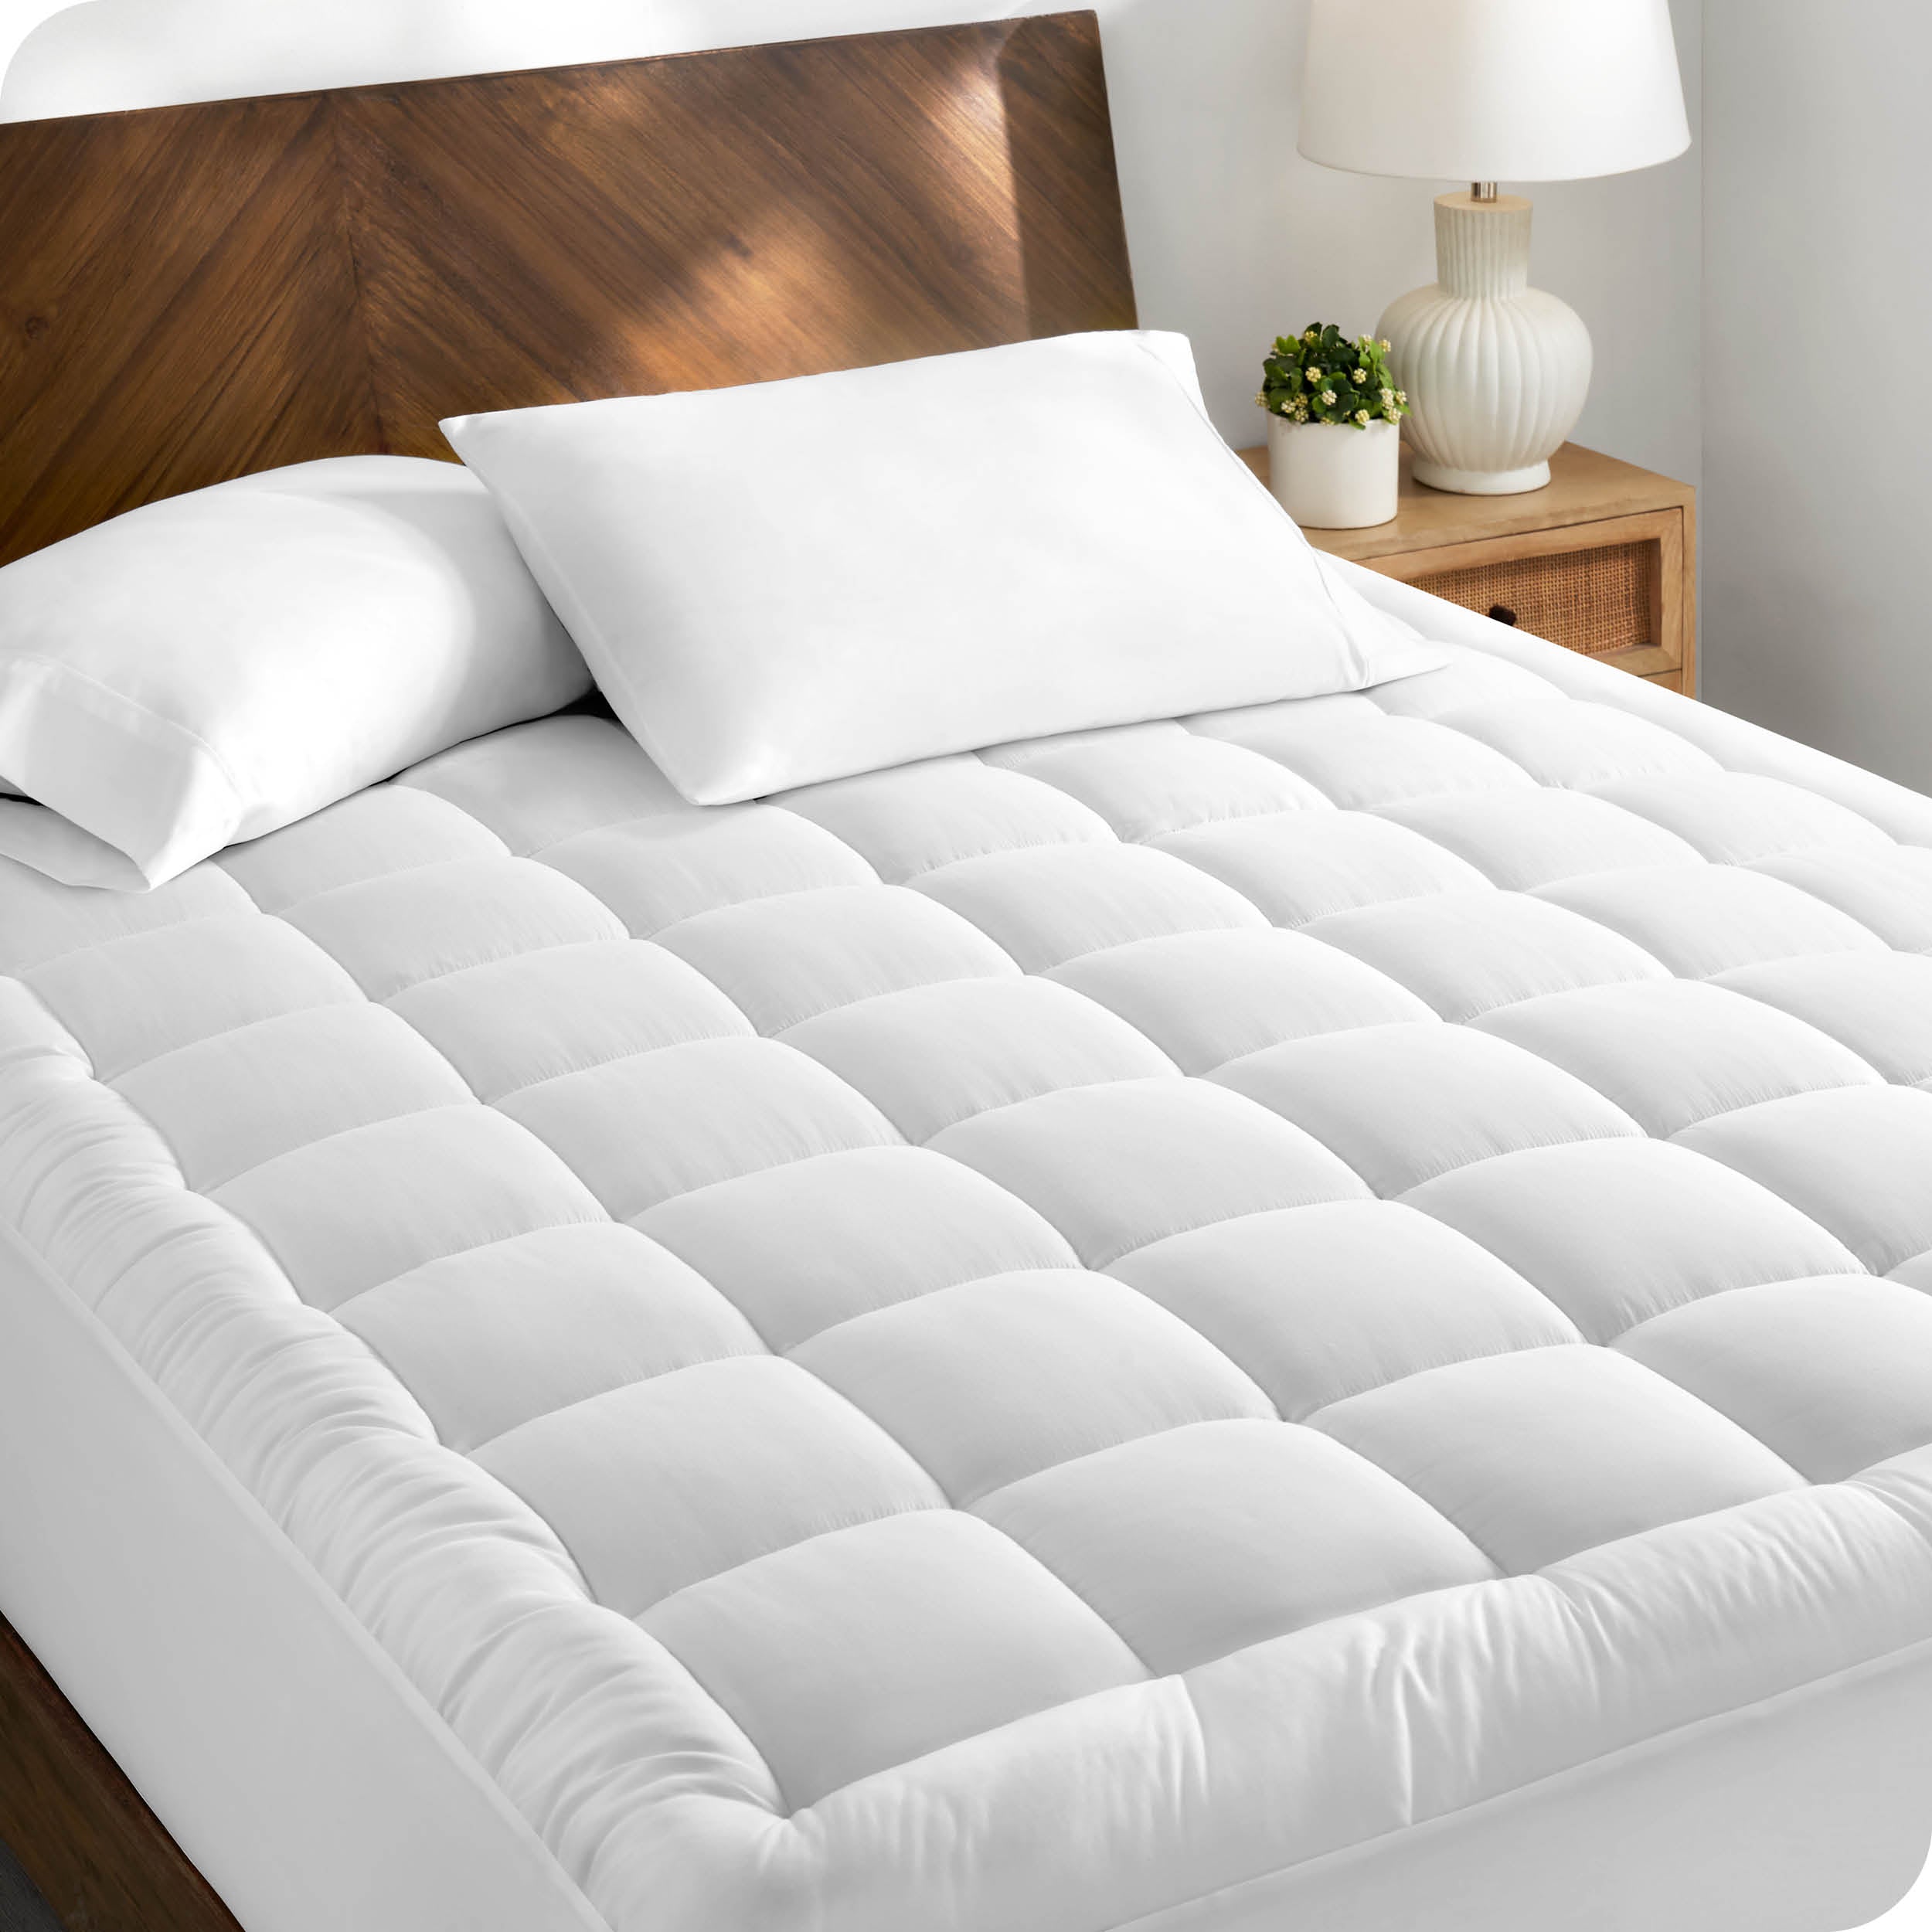 A cotton top mattress pad on a mattress in a modern bedroom.